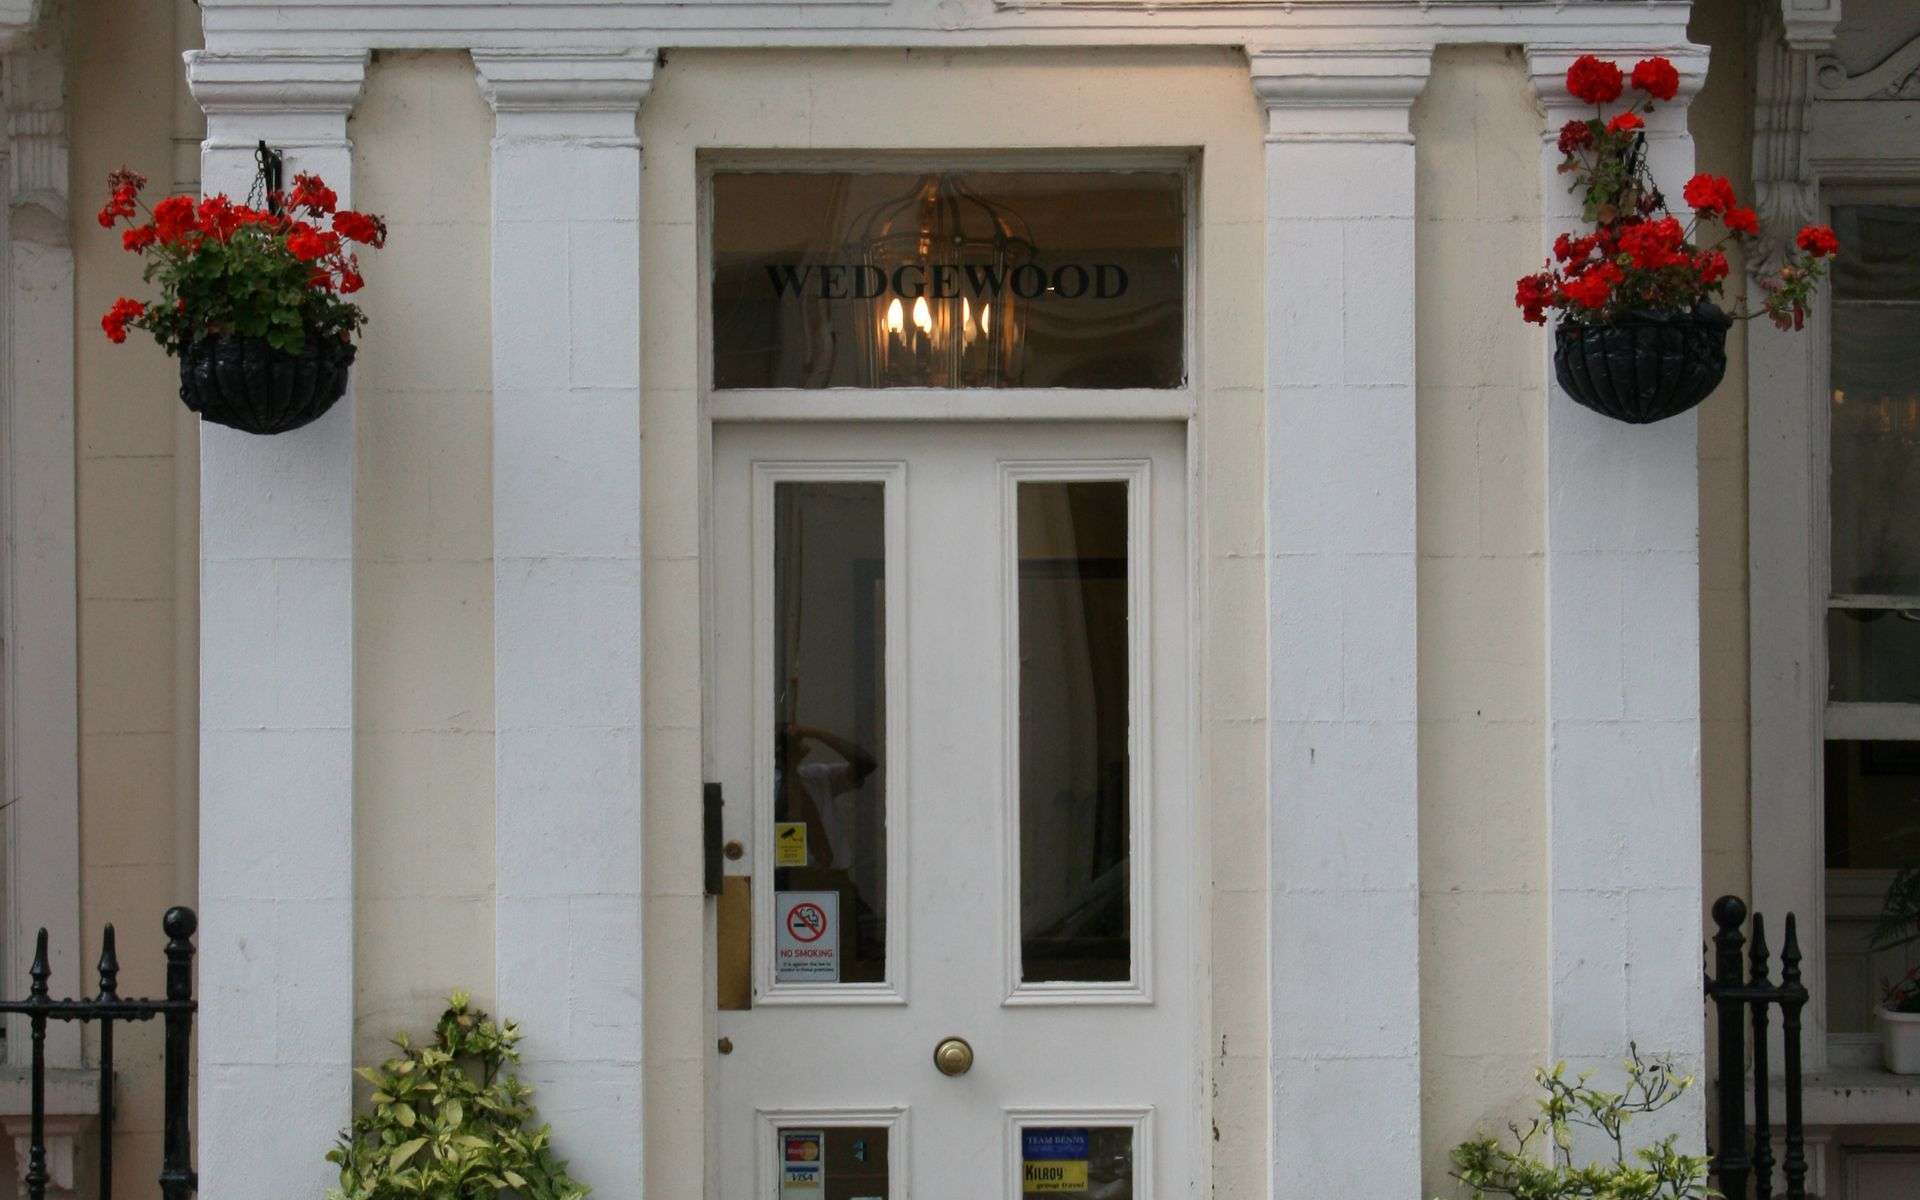 ウェッジウッド ホテル ロンドン エクステリア 写真